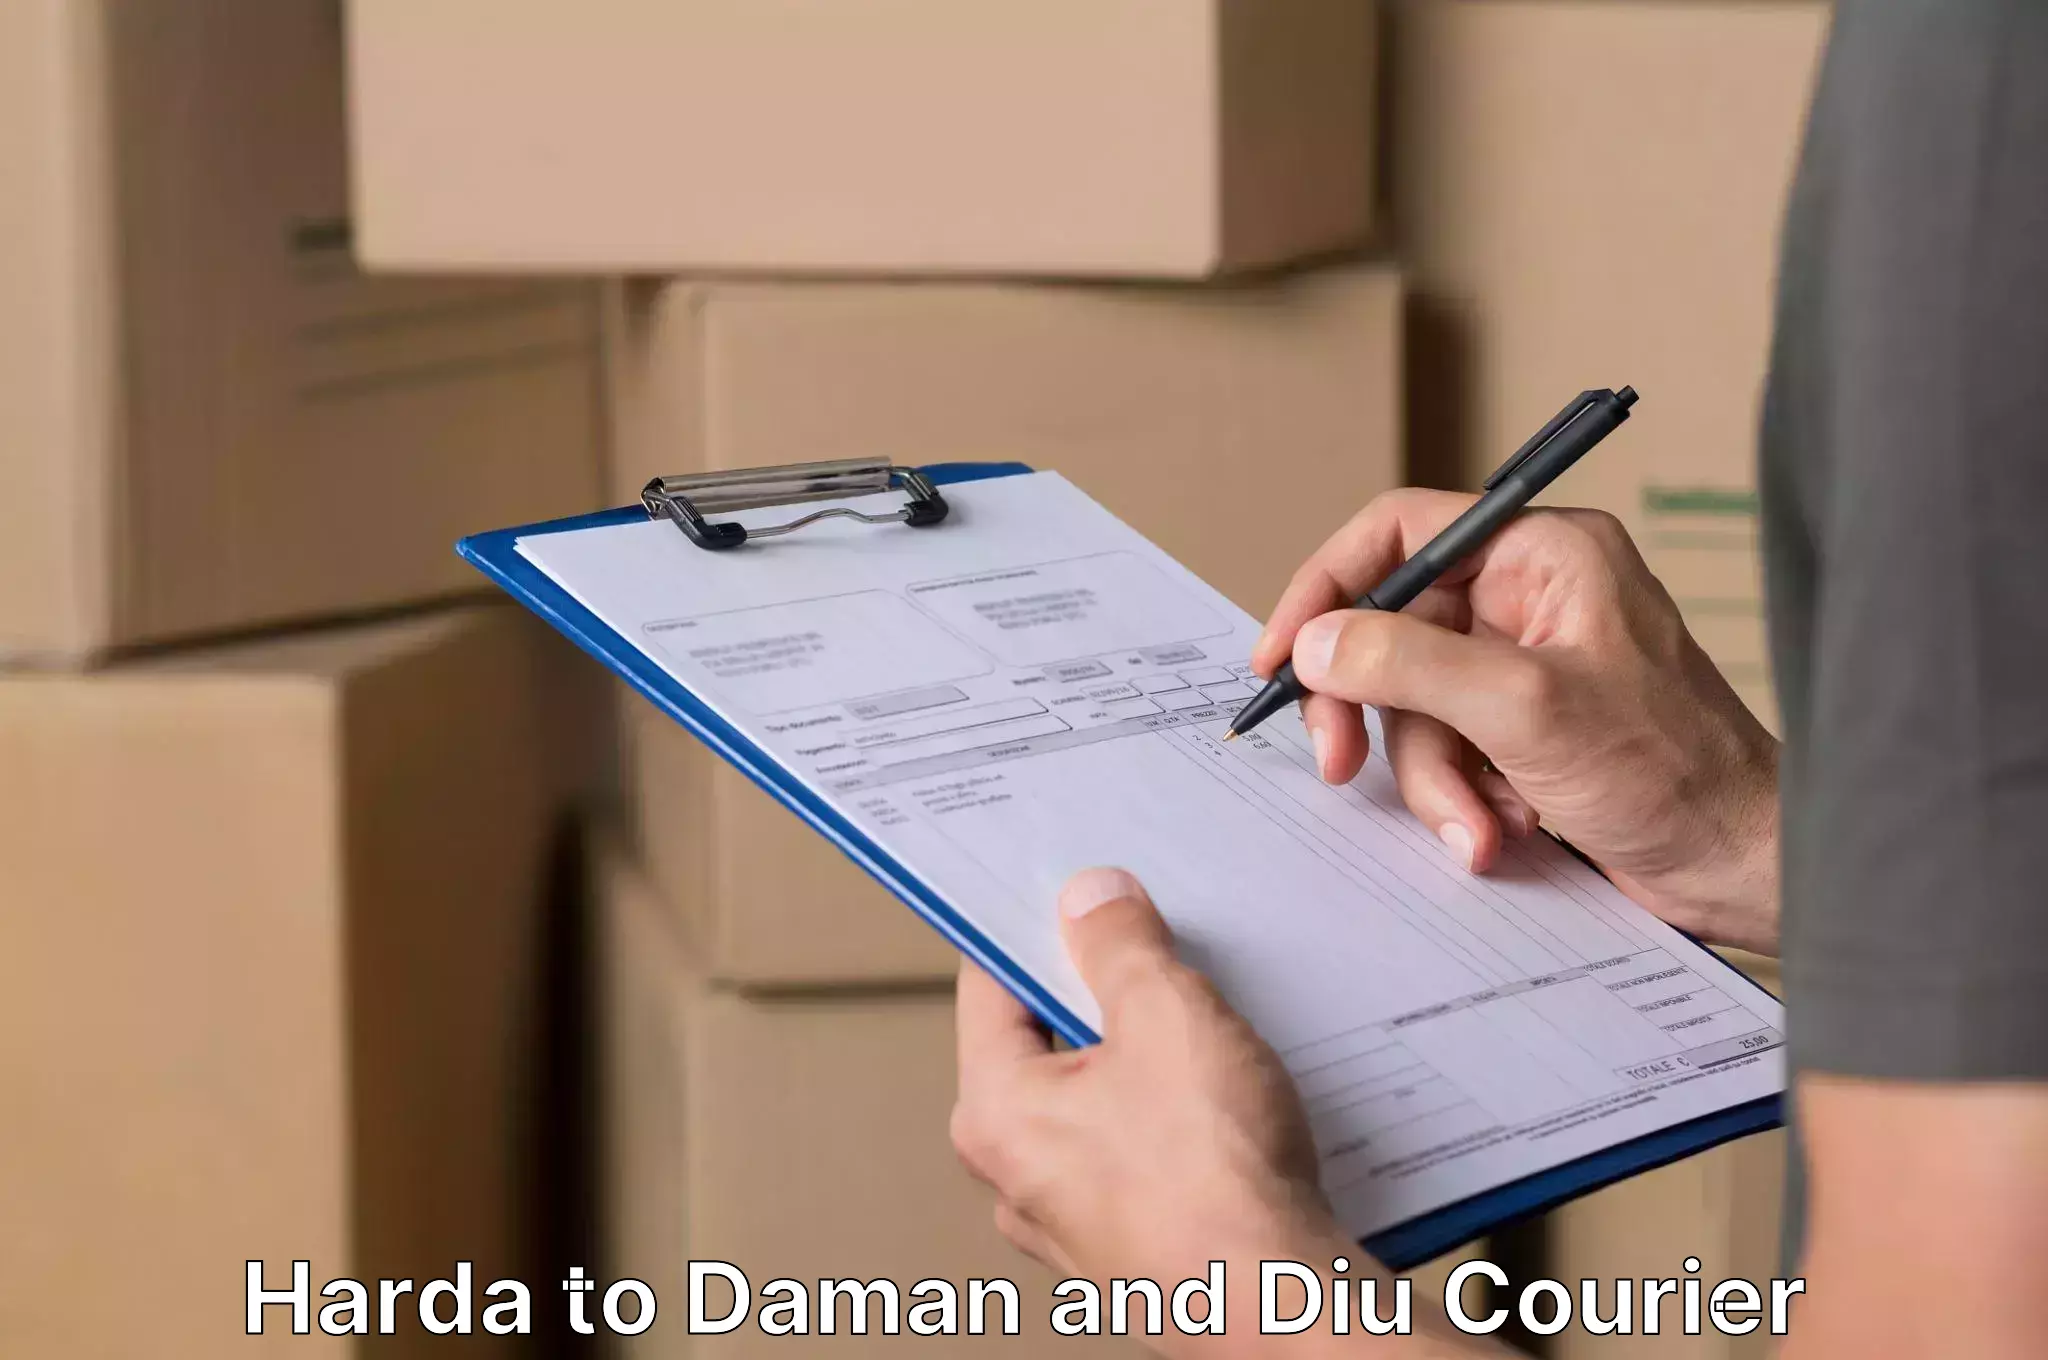 Skilled furniture movers Harda to Daman and Diu